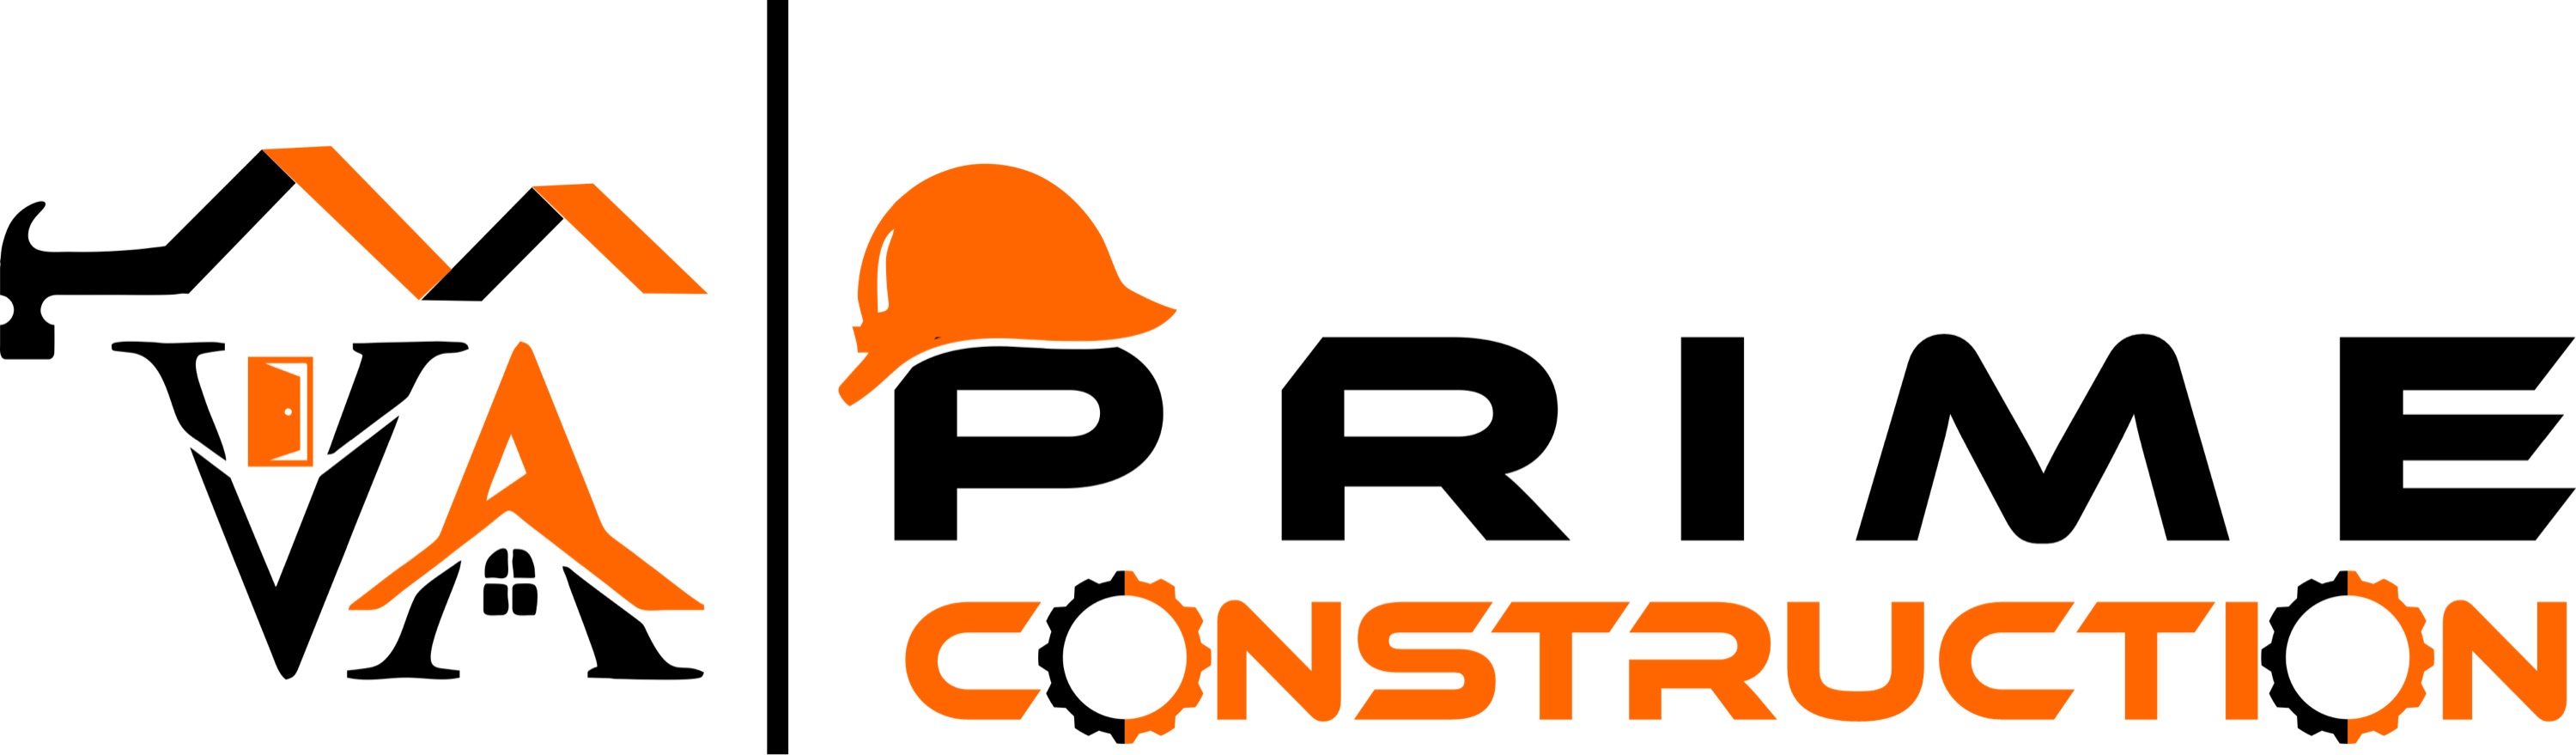 Prime Construction Logo